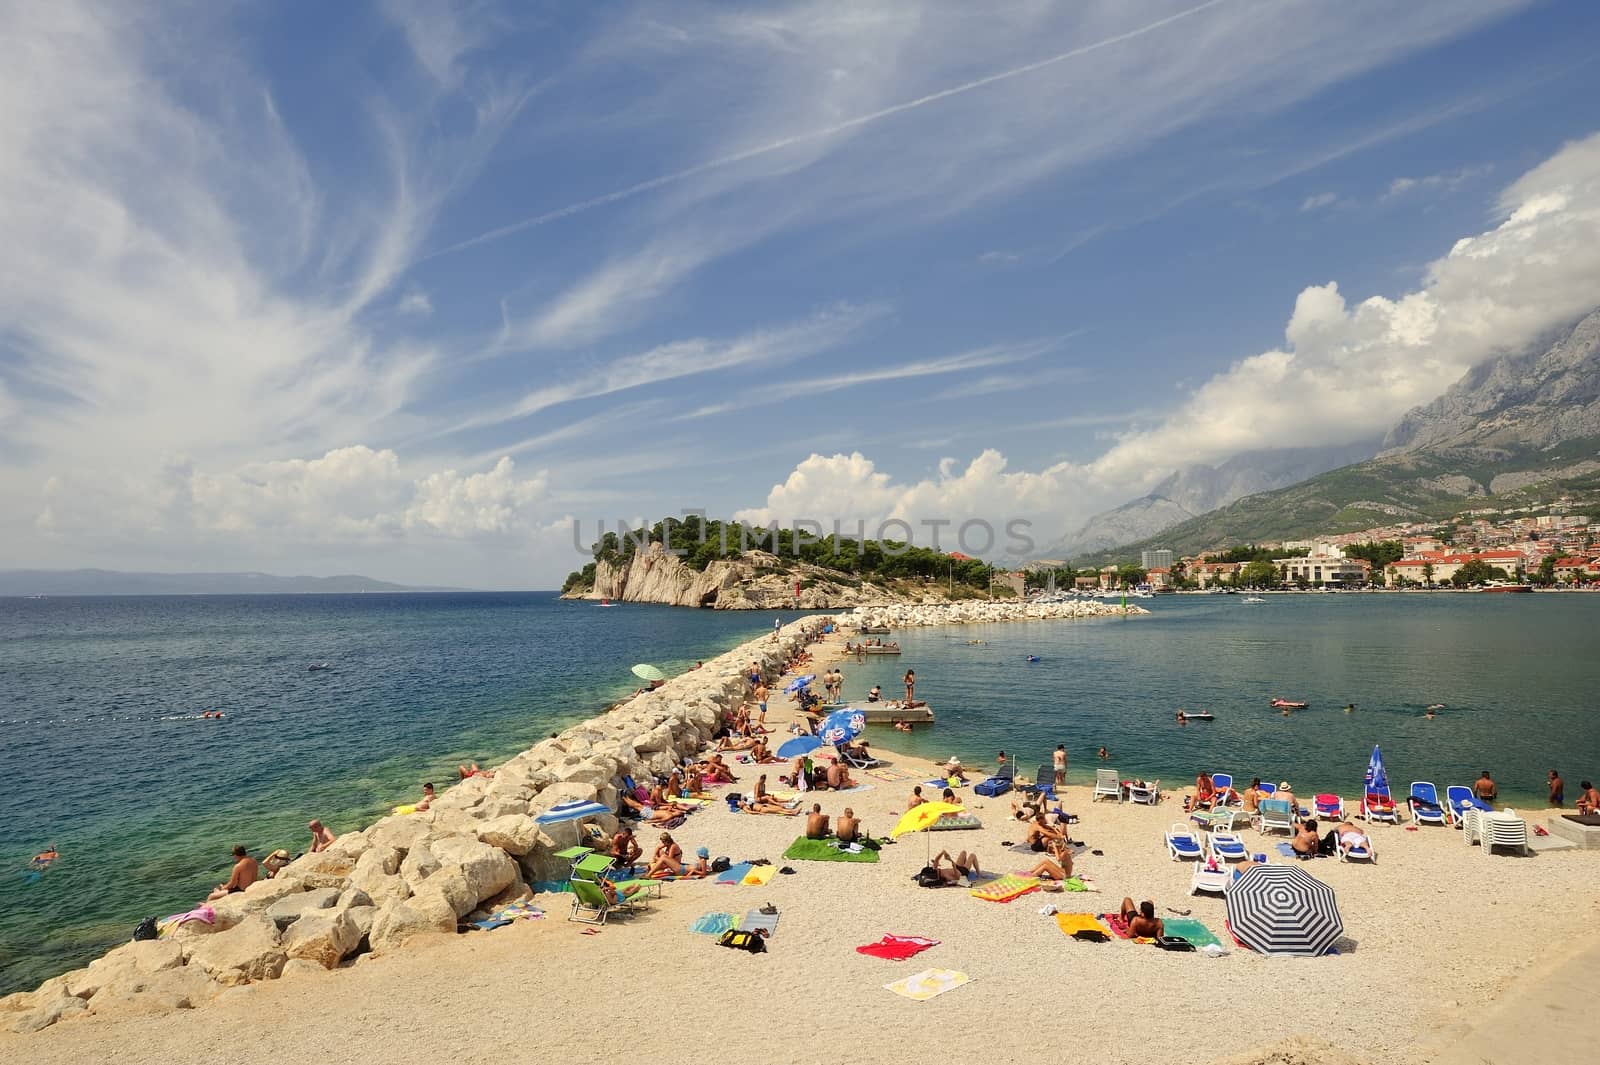 Makarska, Croatia - August 19, 2014: A busy beach in Makarska.